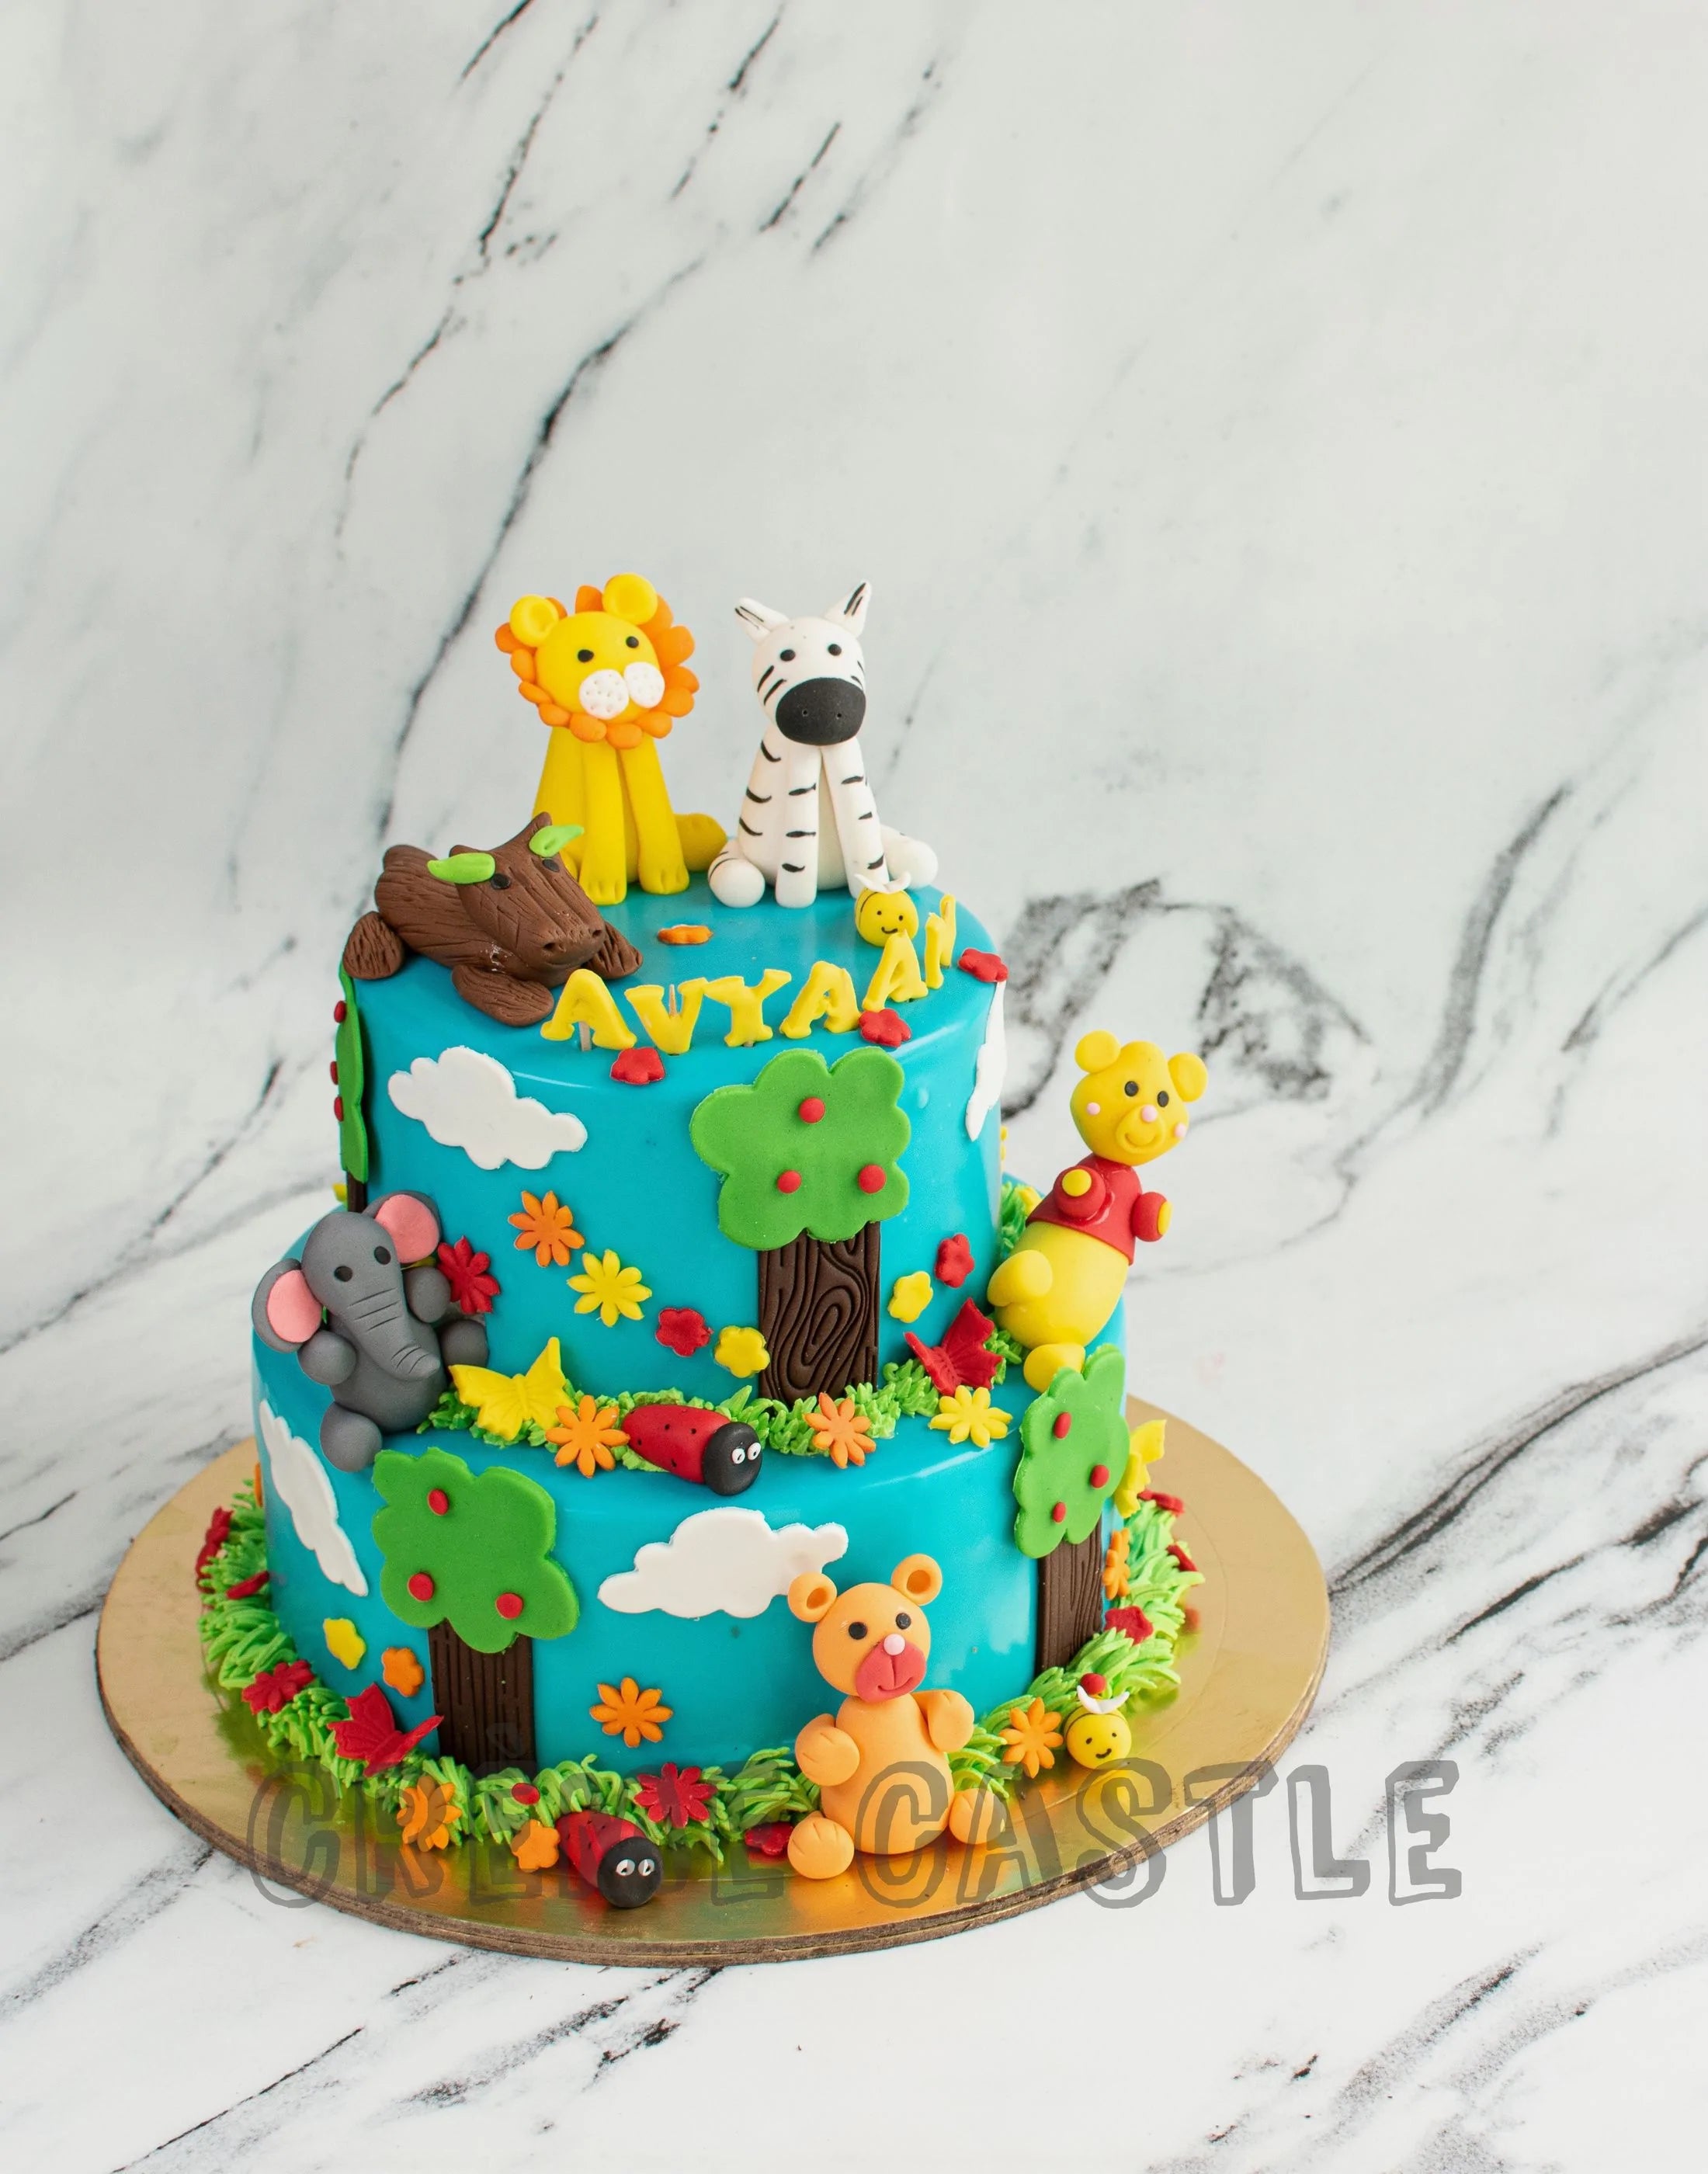 Elephant, frog Jungle birthday cake topper/ decoration, personalised name,  age | eBay